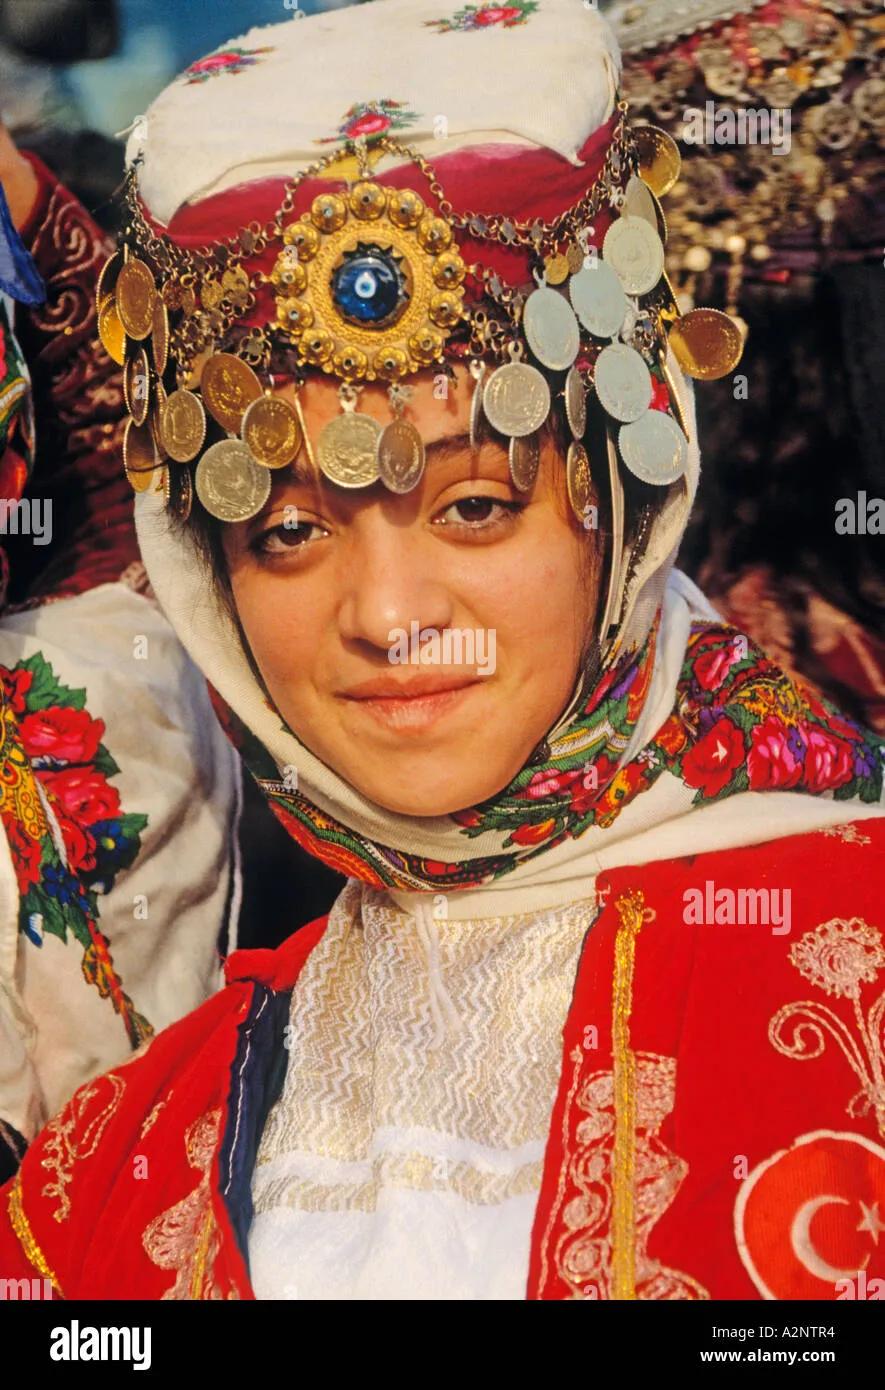 Türkei türkische Mädchen in traditioneller Tracht Stockfotografie - Alamy